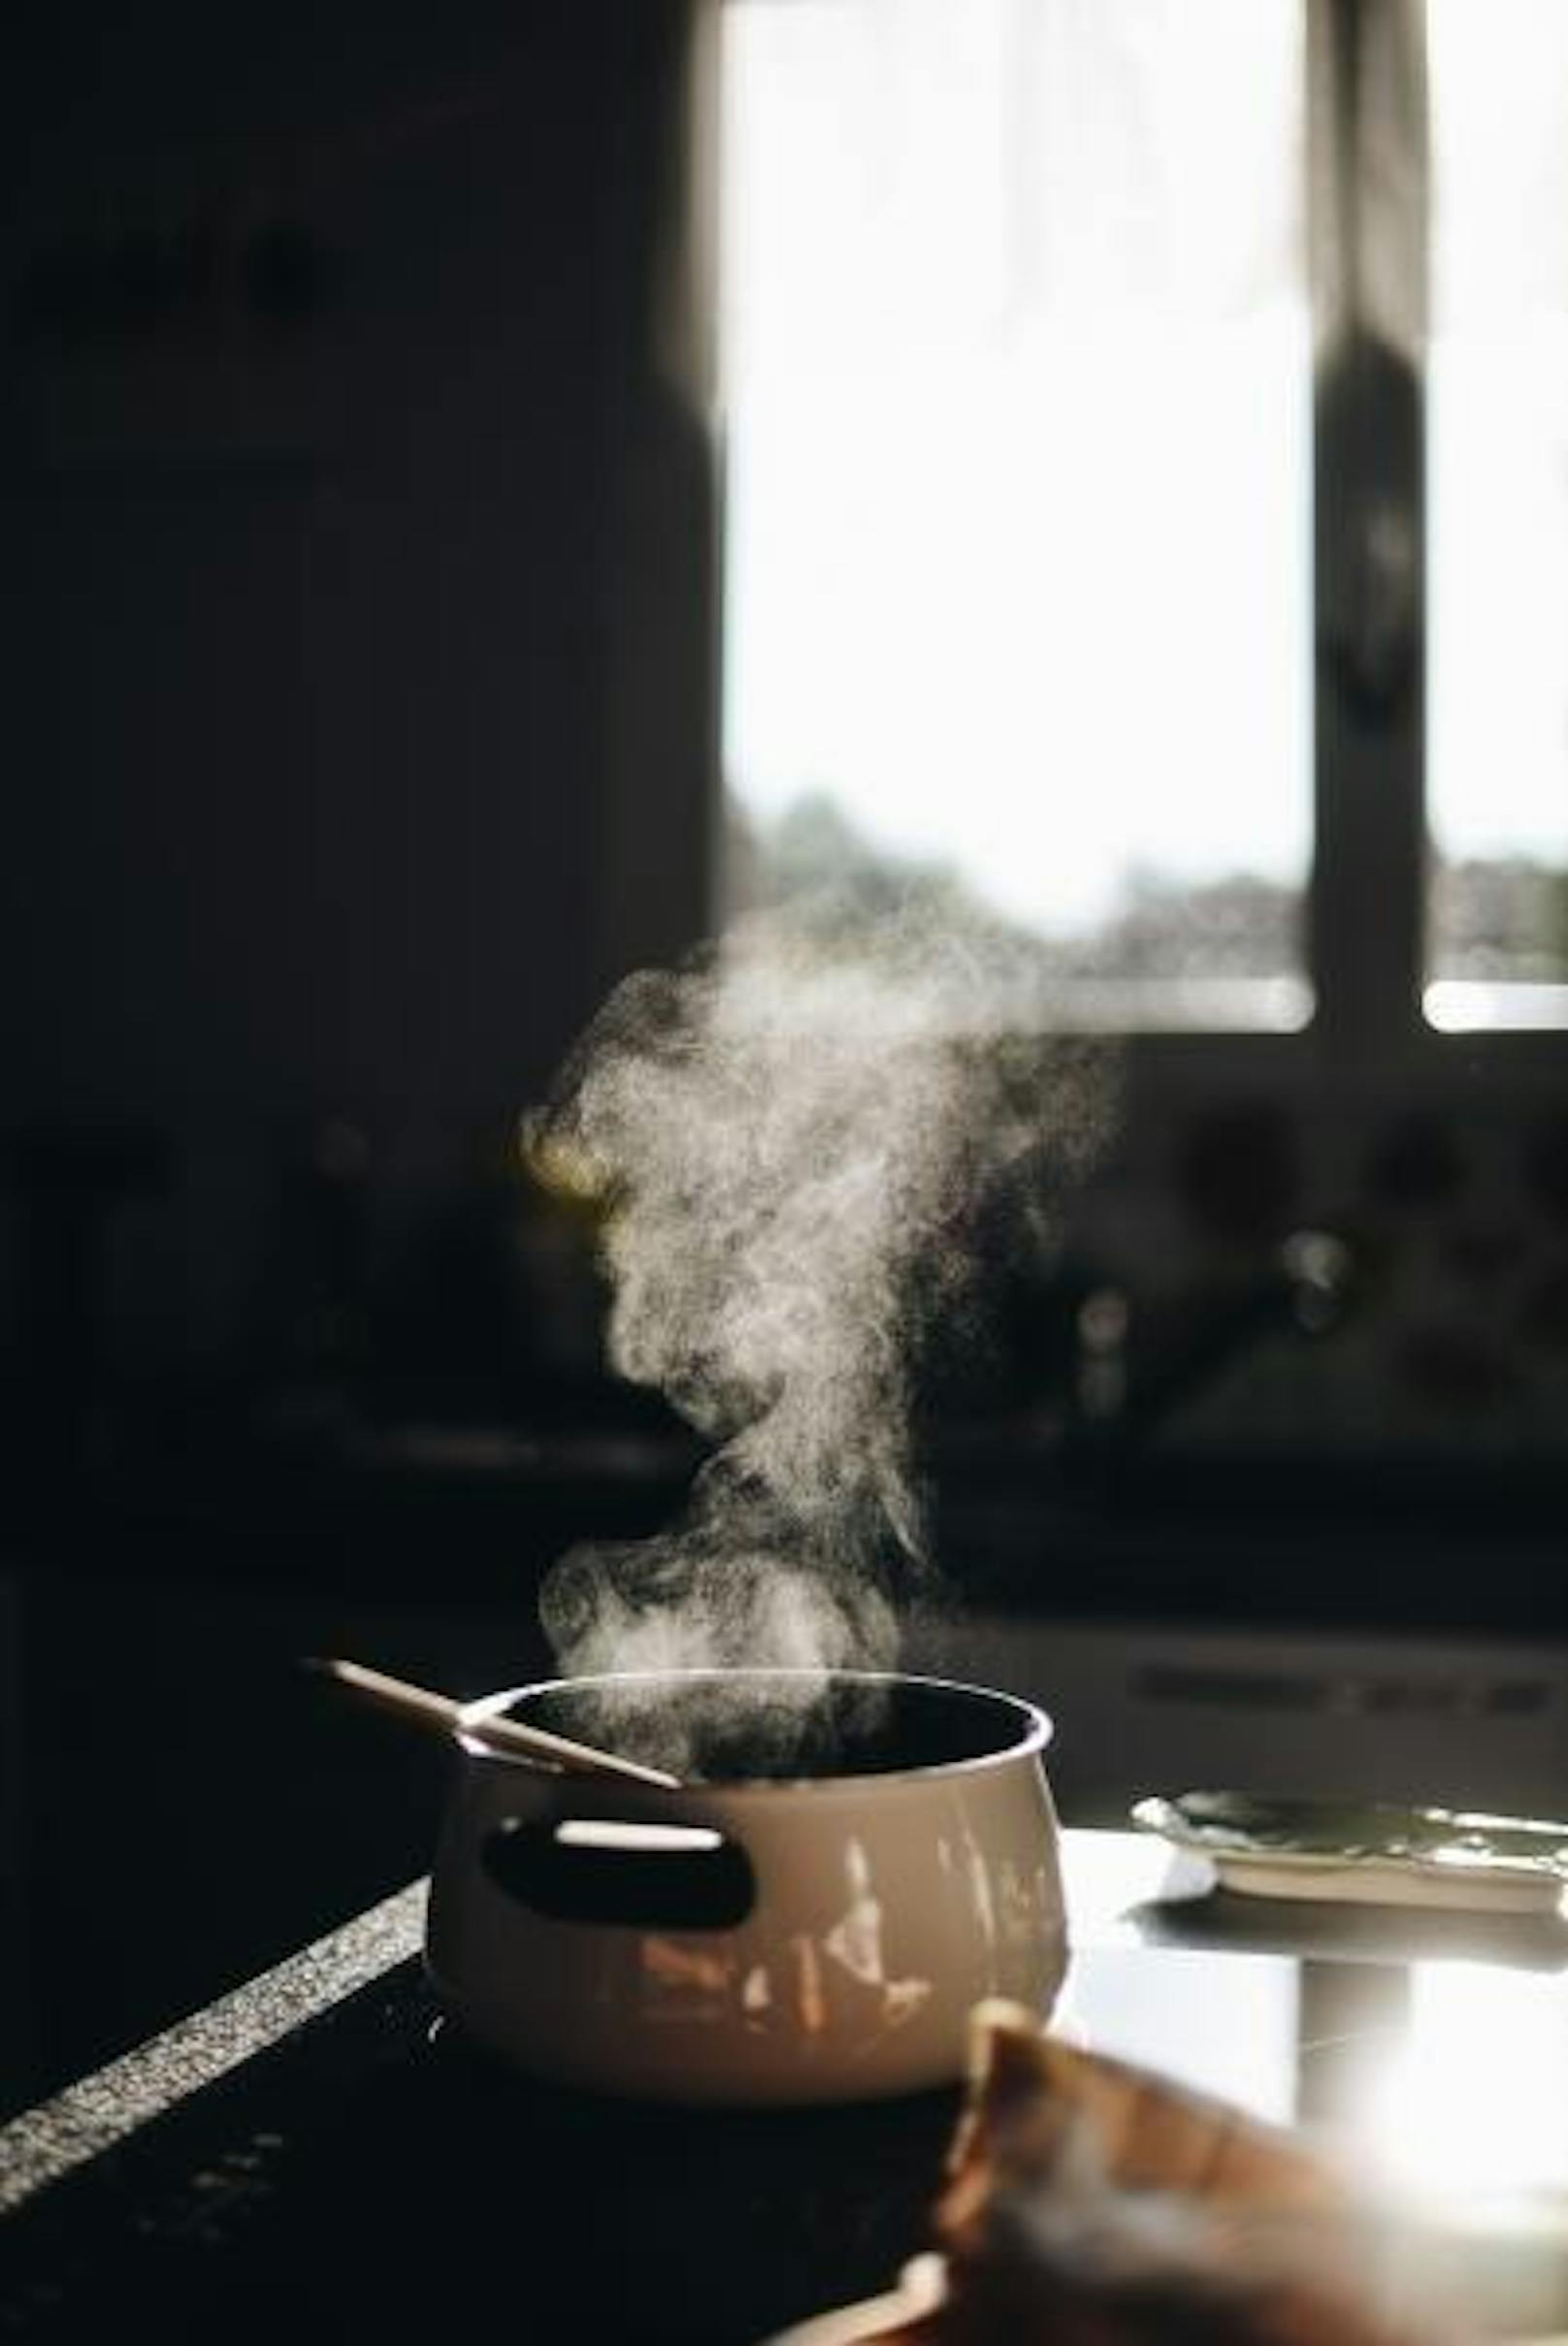 <b>Essig kochen</b>
Dampf absorbiert Gerüche. Einfach vor dem Kochen eine Pfanne mit einem Wasser-Essig-Gemisch aufkochen; der entstehende Dampf verhindert, dass sich Gerüche festsetzen. 